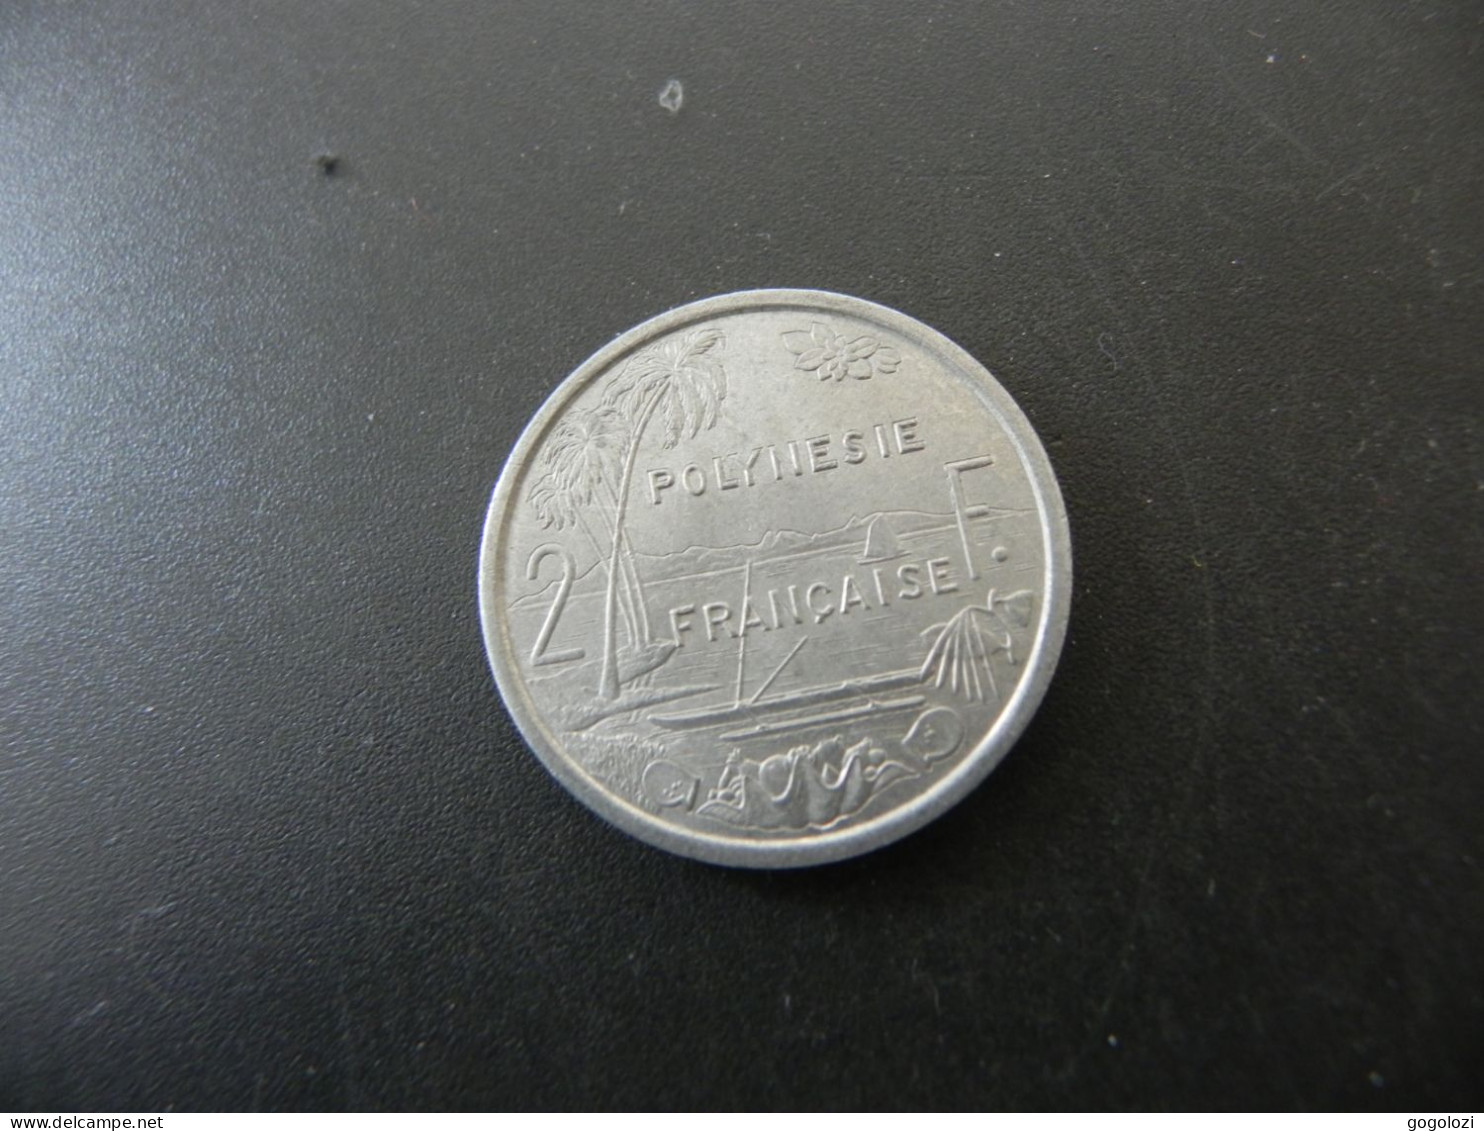 Polynesie Française 2 Francs 1975 - Polynésie Française